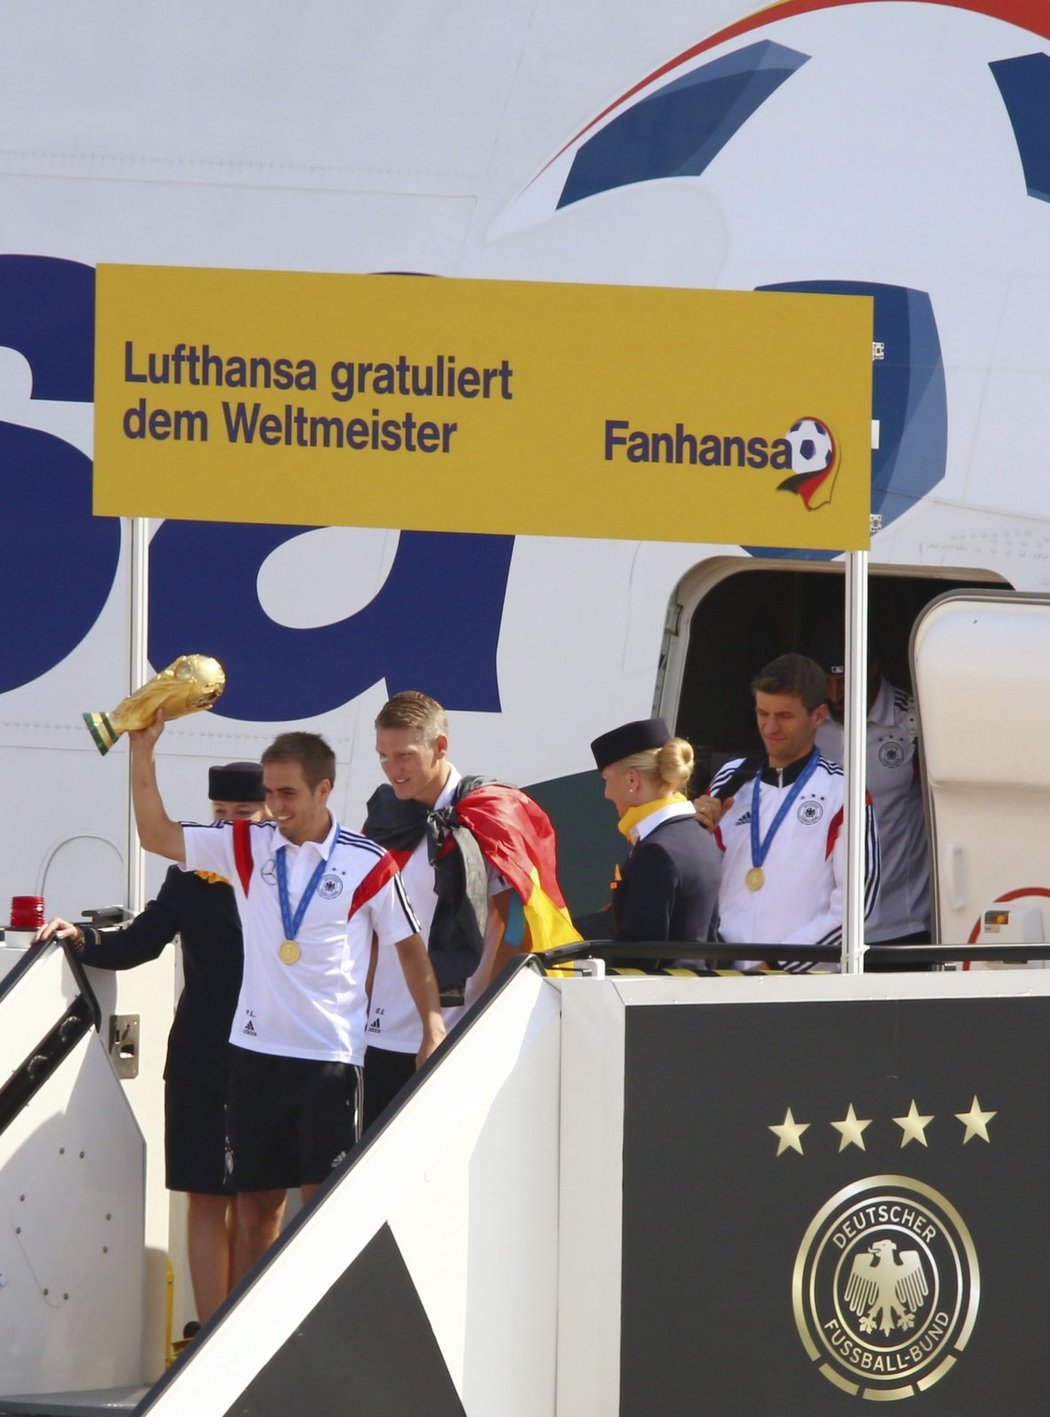 Trofej pro mistry světa je doma! Kapitán Philipp Lahm vystupuje po příletu v Berlíně